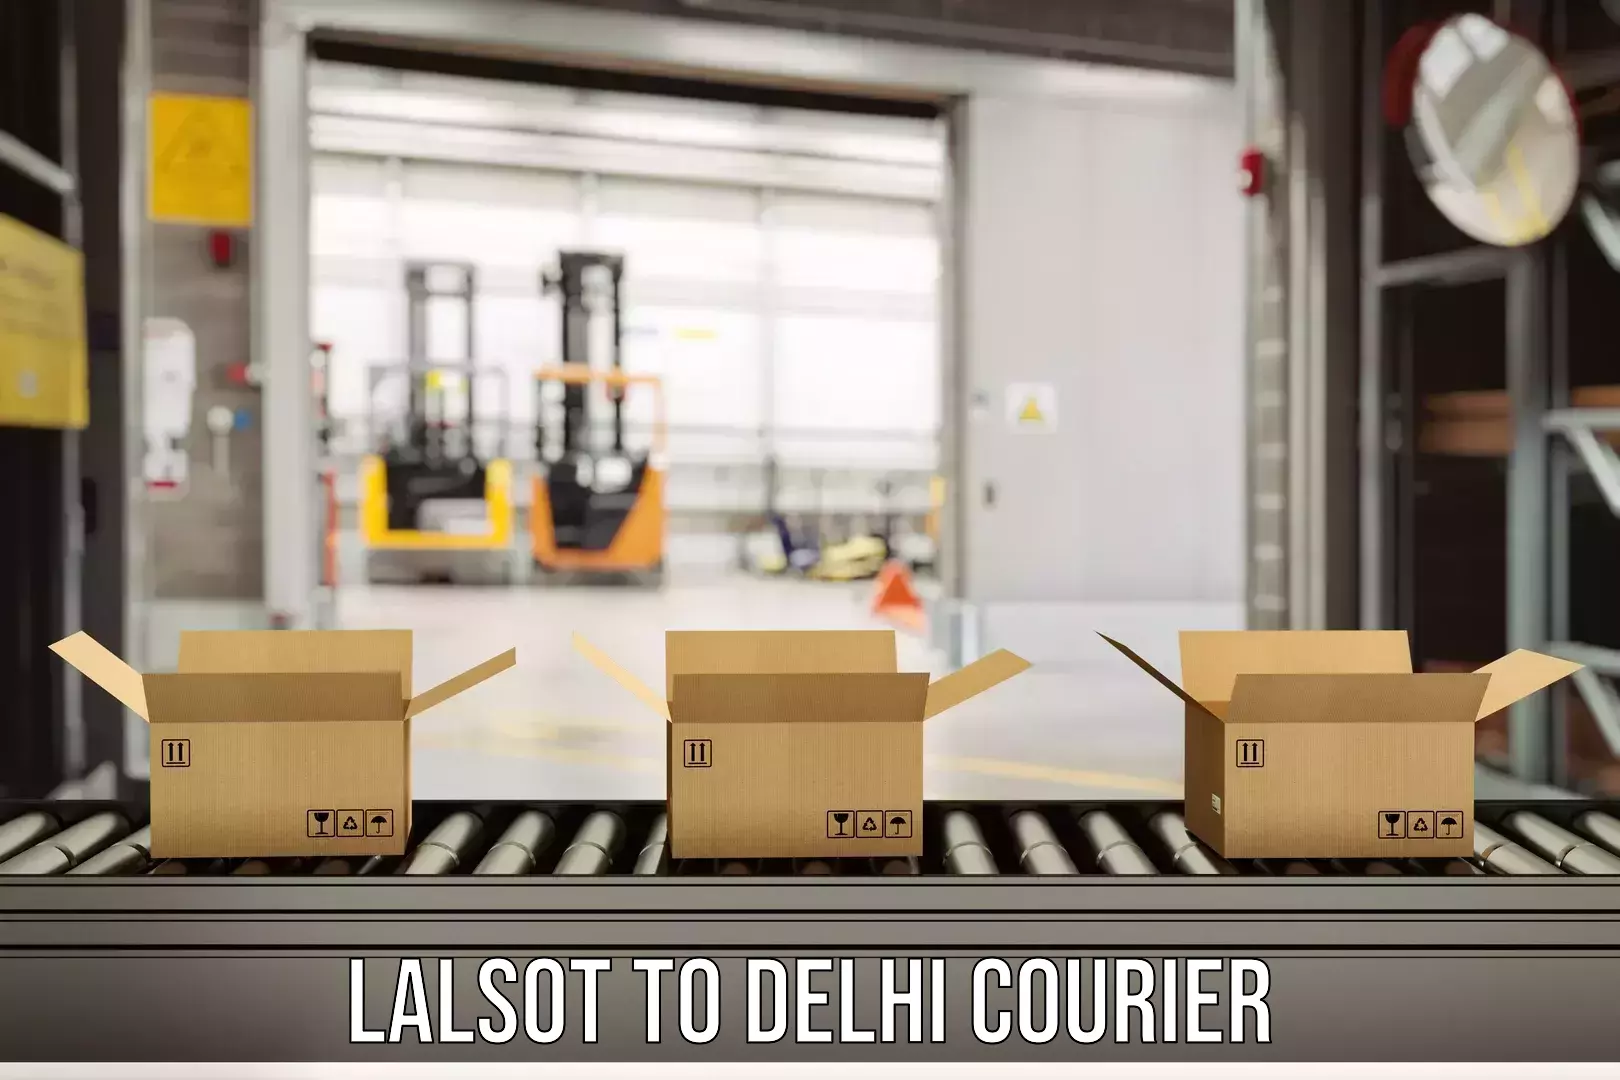 Premium courier services Lalsot to Delhi